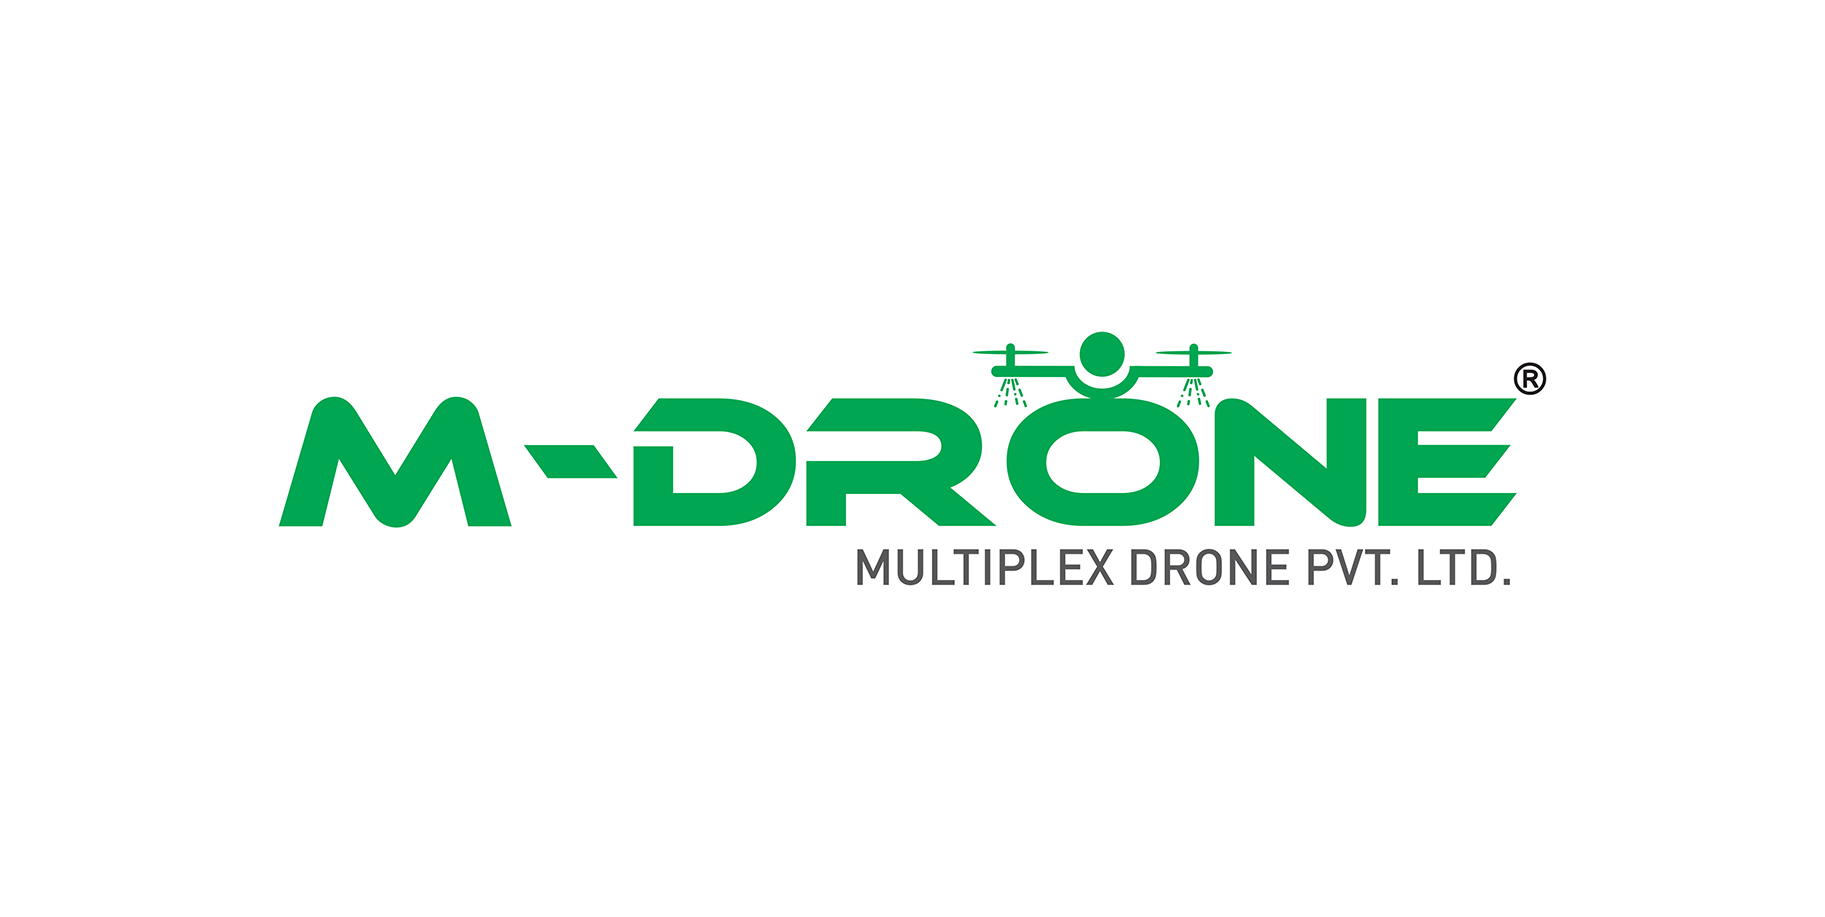 Multiplex Drone Pvt. Ltd